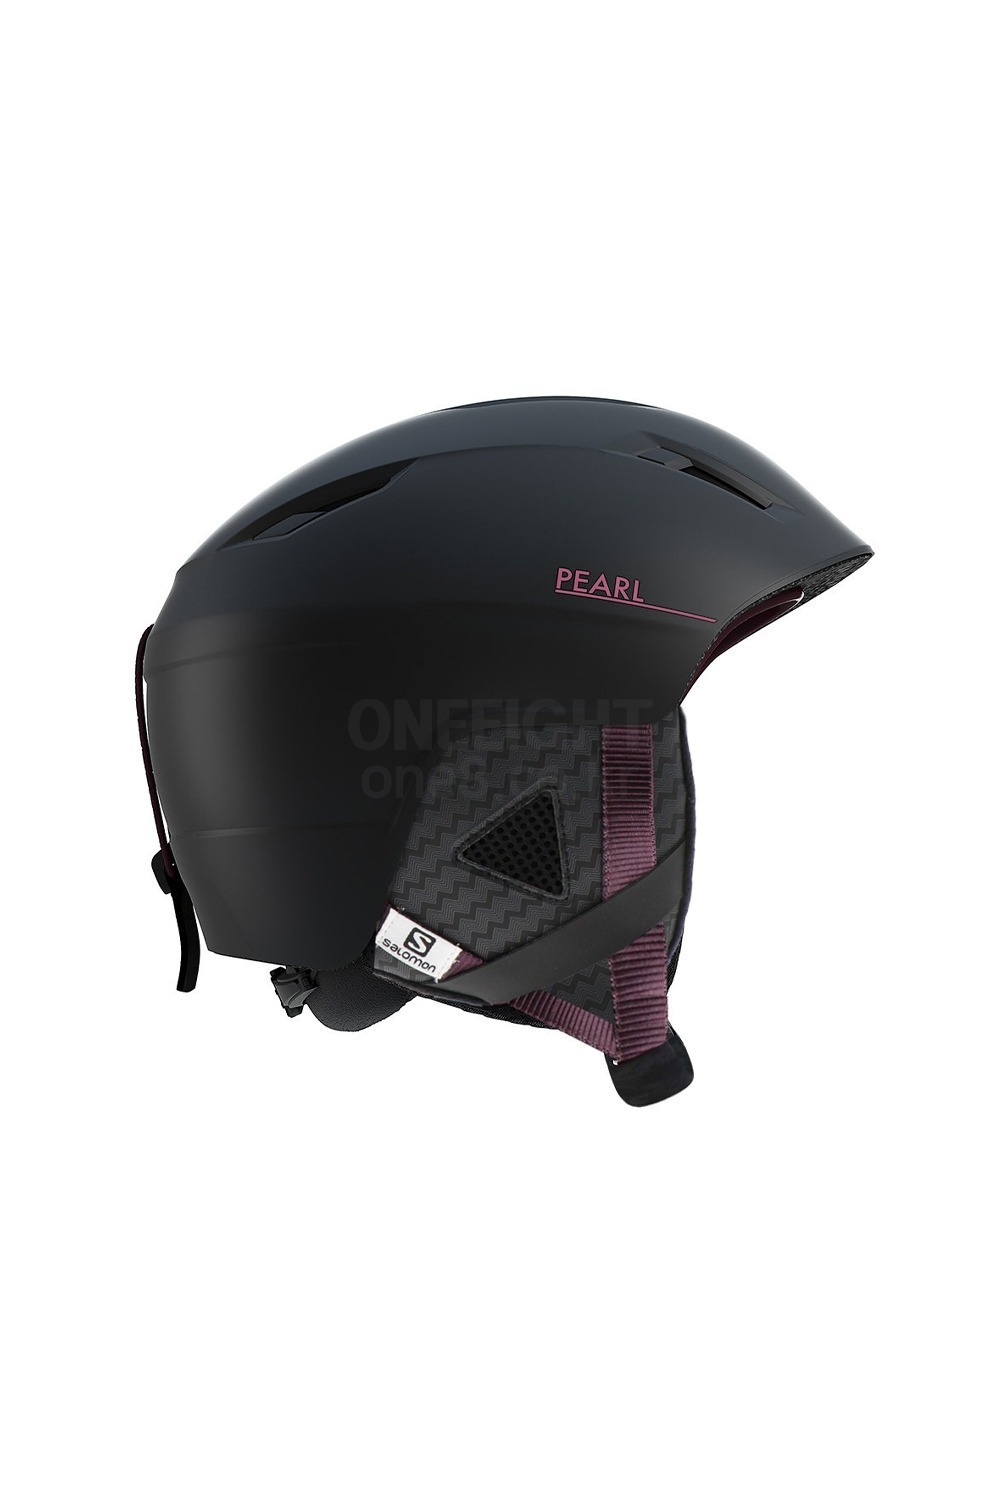 살로몬 여성 헬멧 펄2+  SALOMON(L40600800)PEARL2+_BLACK_커스텀 다이얼 시스템_DFSA916BK 